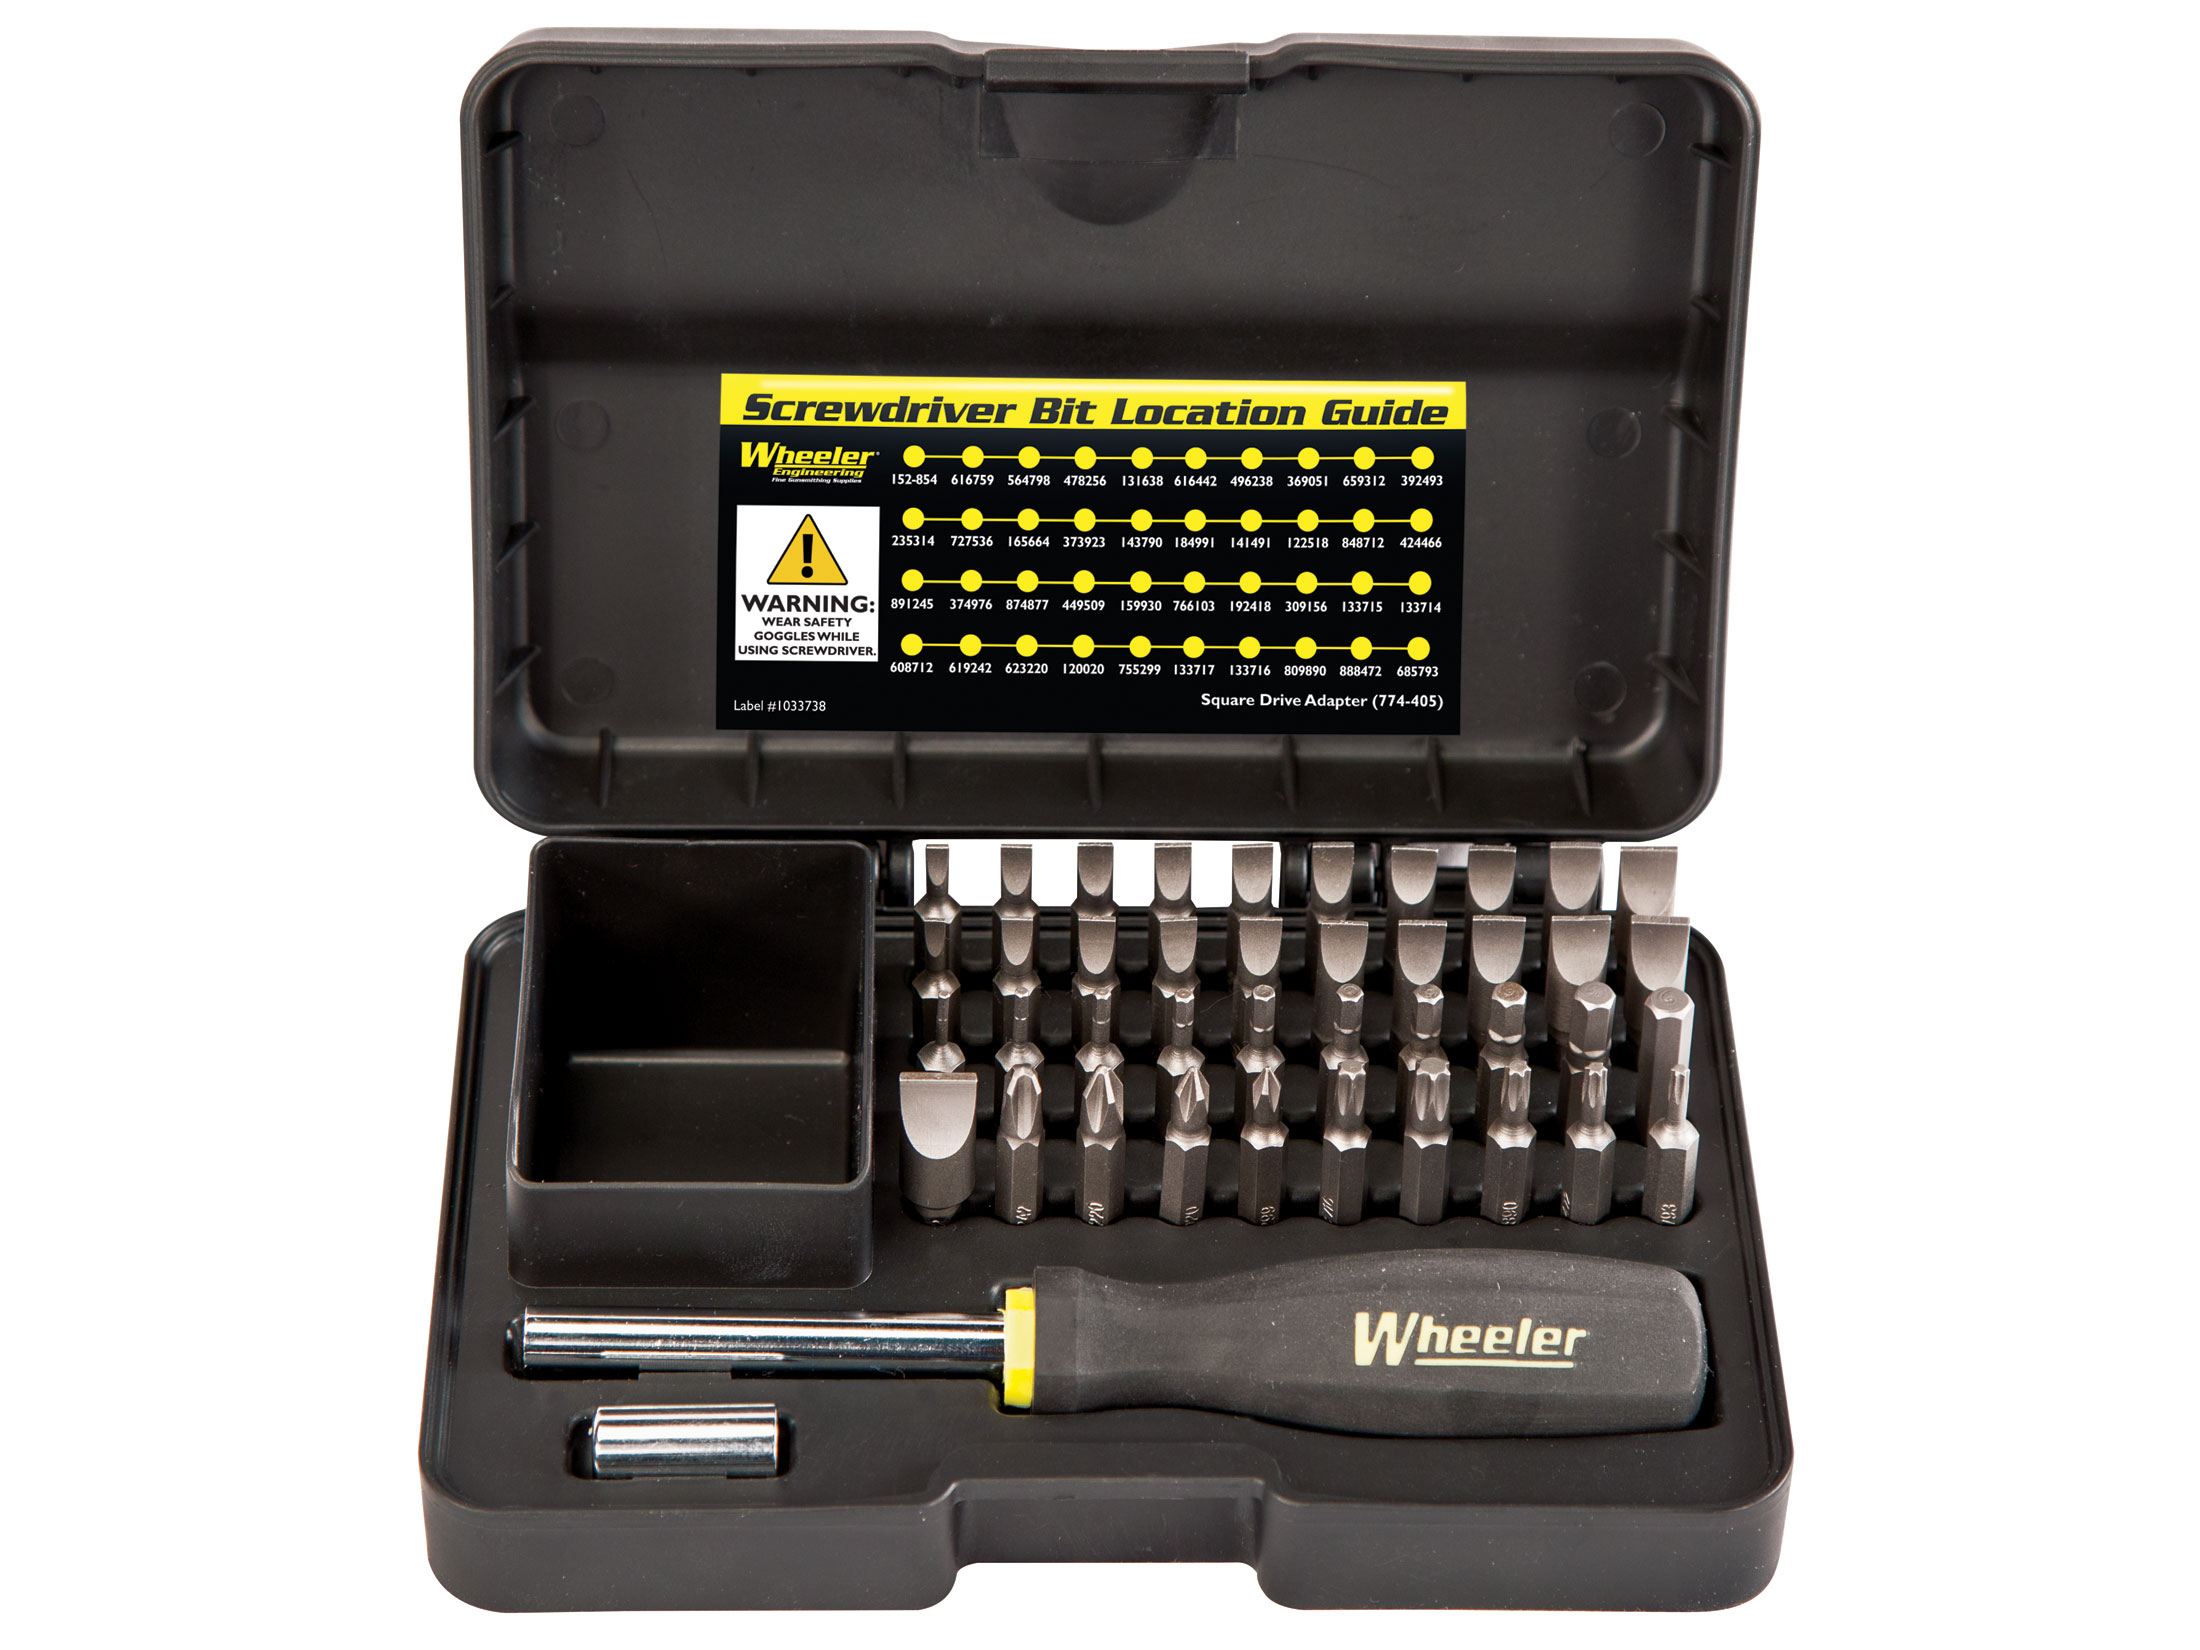 Wheeler Screwdriver Upgrade Kit 